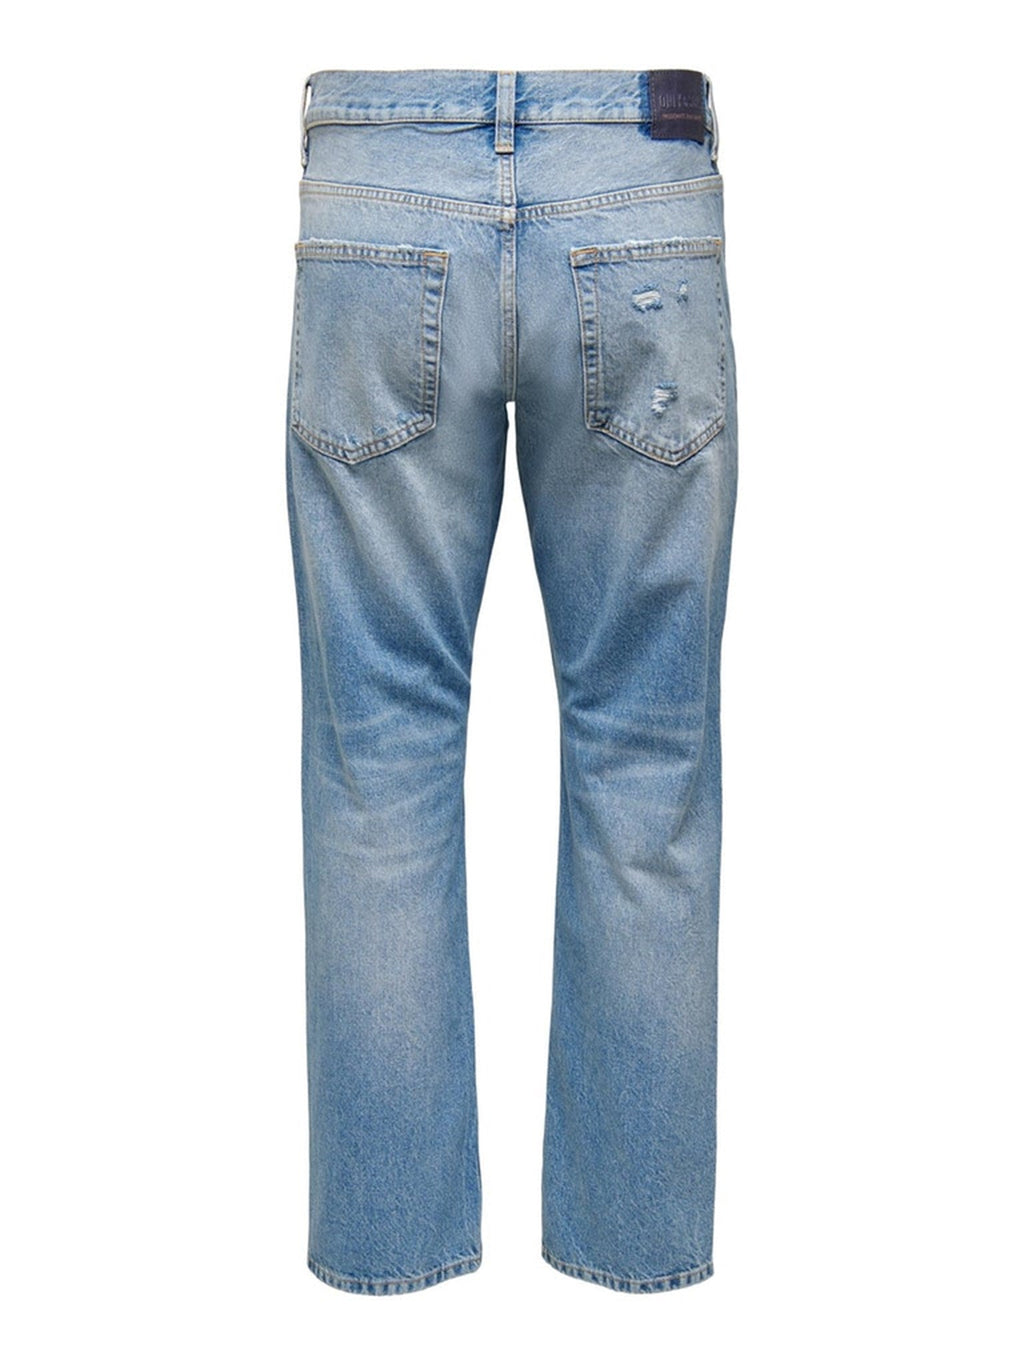 Jeans sueltos de borde - mezclilla azul claro